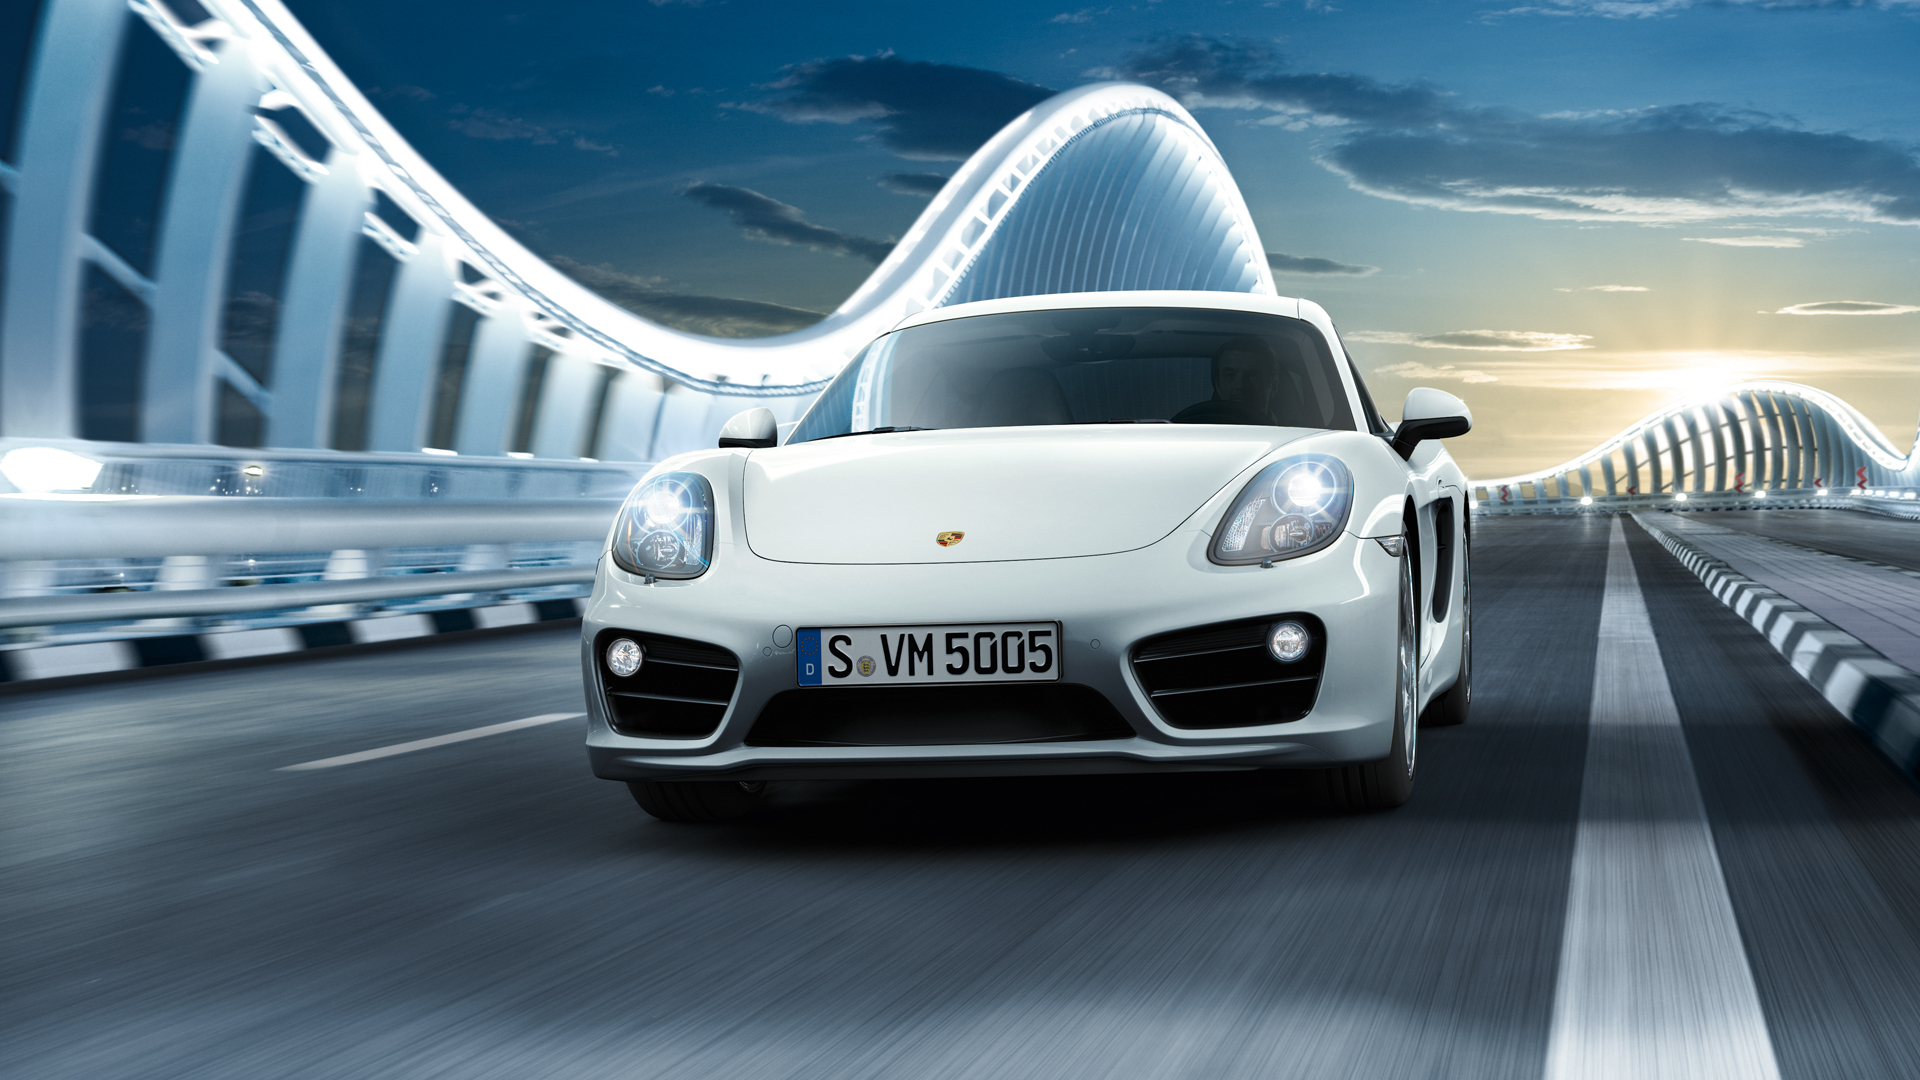 Descarga gratuita de fondo de pantalla para móvil de Porsche Caimán S, Porsche Caimán, Coche Blanco, Porsche, Vehículos, Coche.